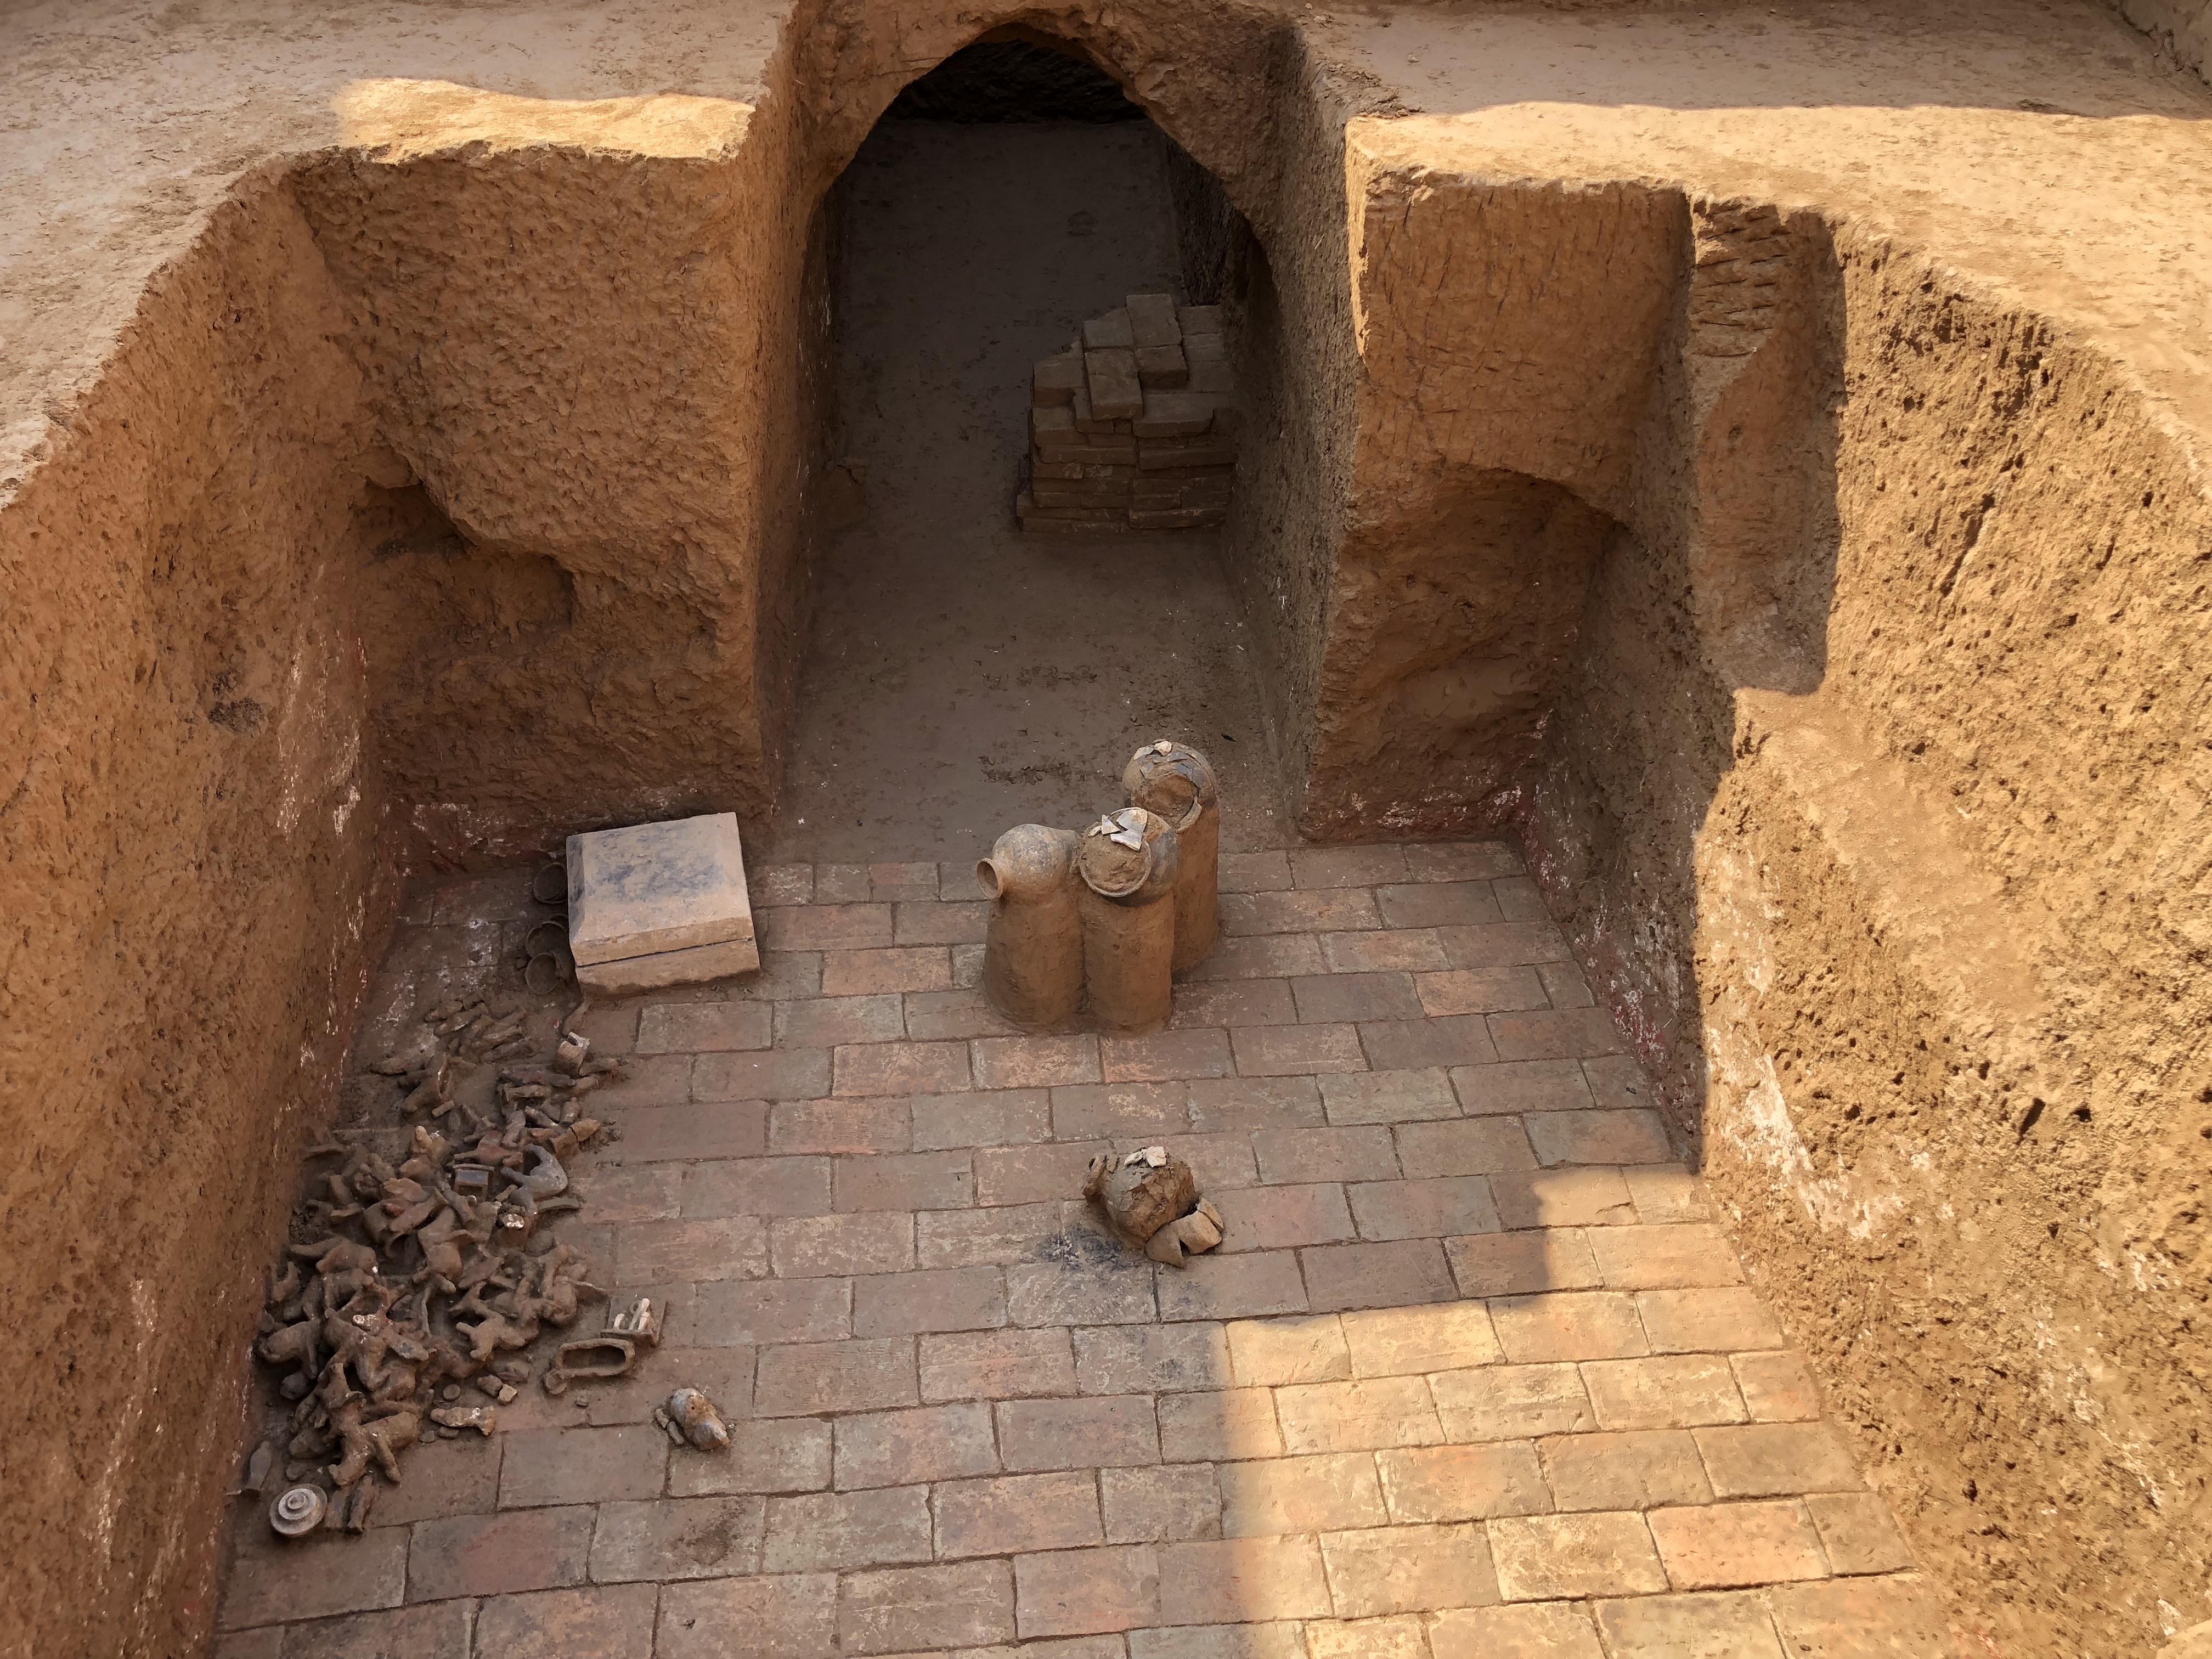 陕西省考古研究院发布了对北周宇文觉墓的考古发掘成果(图1)